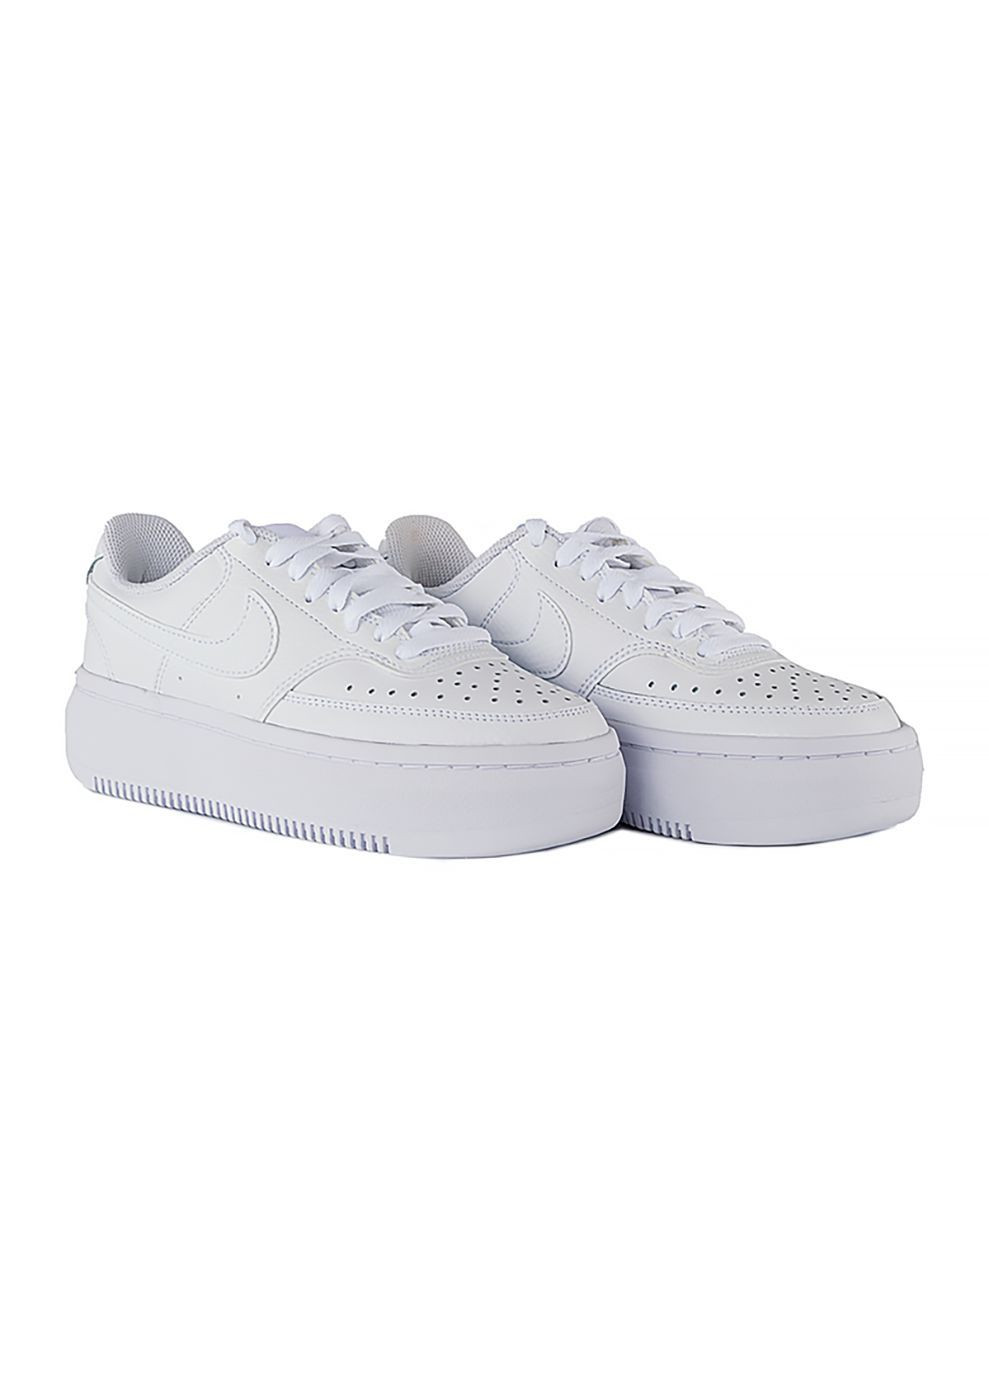 Белые демисезонные женские кроссовки court vision alta ltr белый Nike